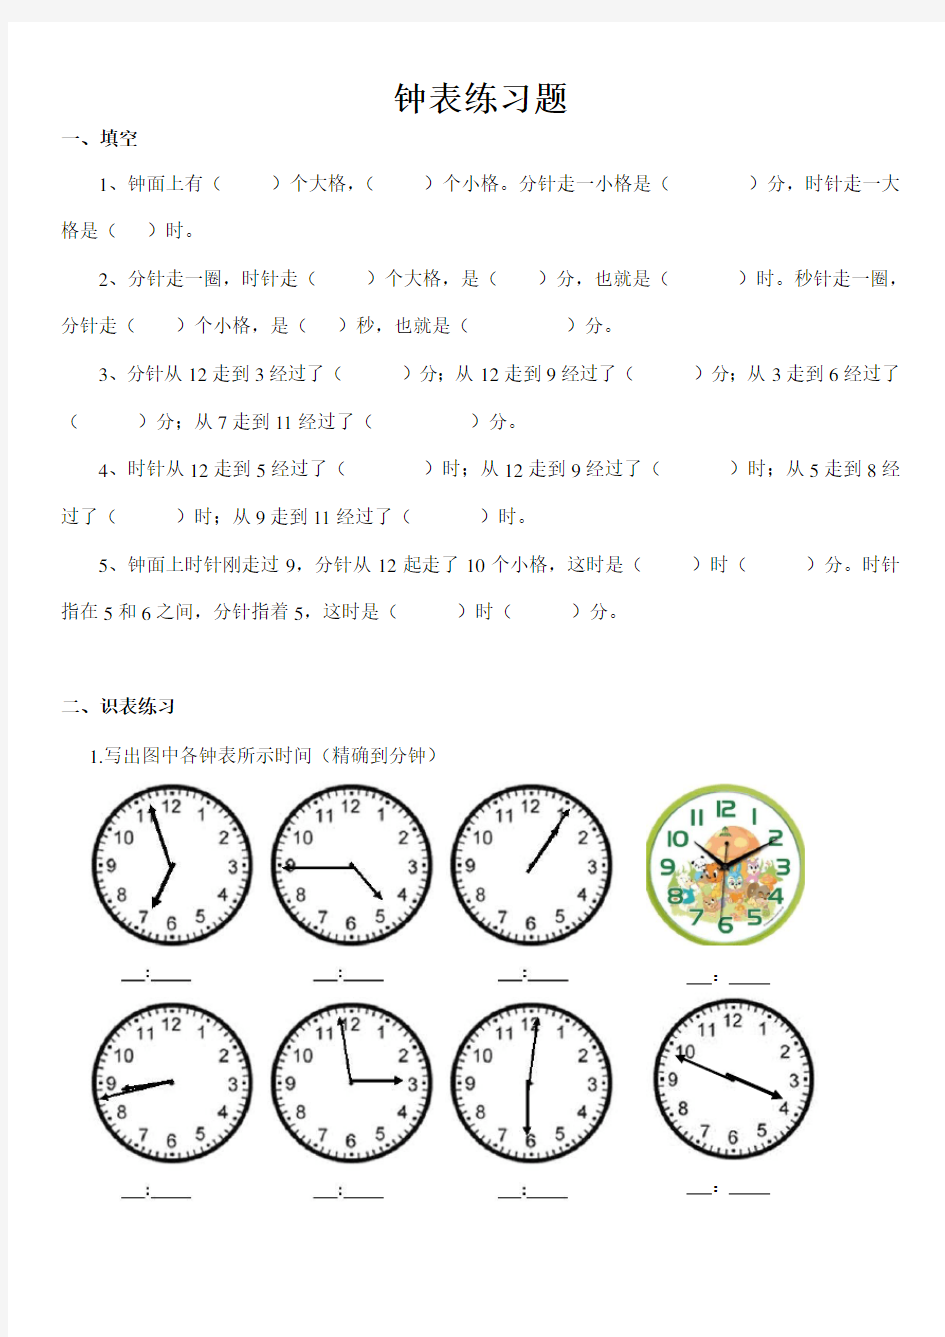 (完整版)小学二年级钟表时间练习题(打印版)